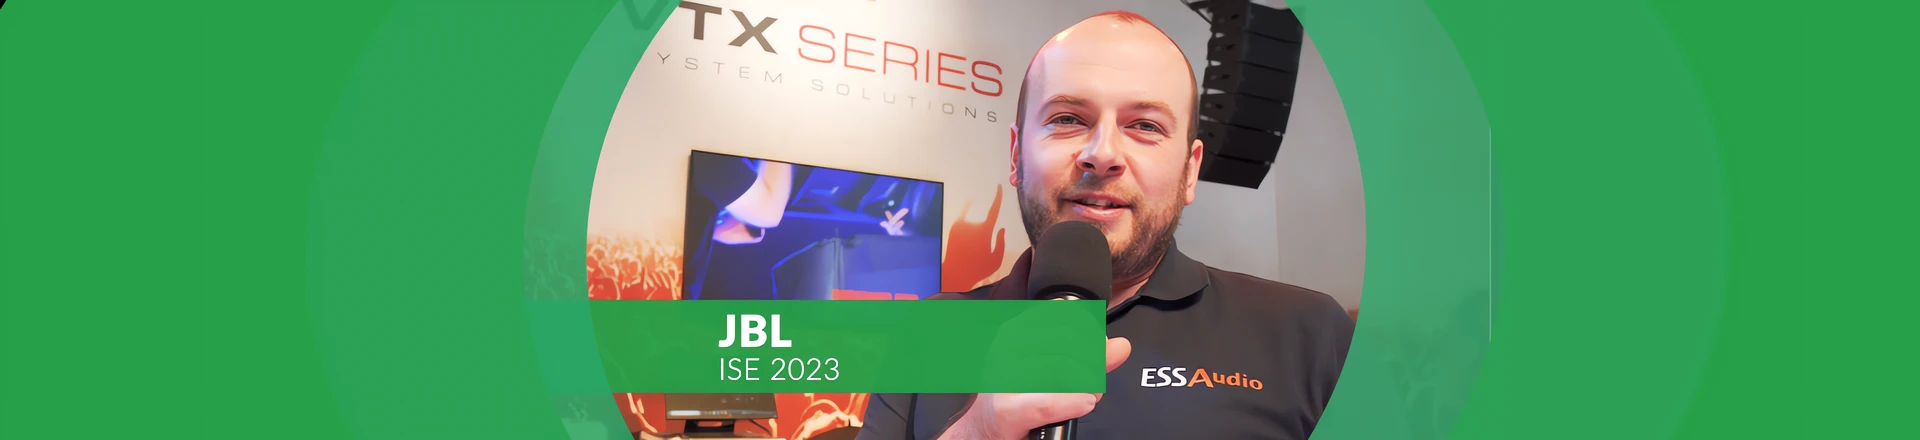 SRX900 - Bestsellerowy system nagłośnienia od JBL - dlaczego?